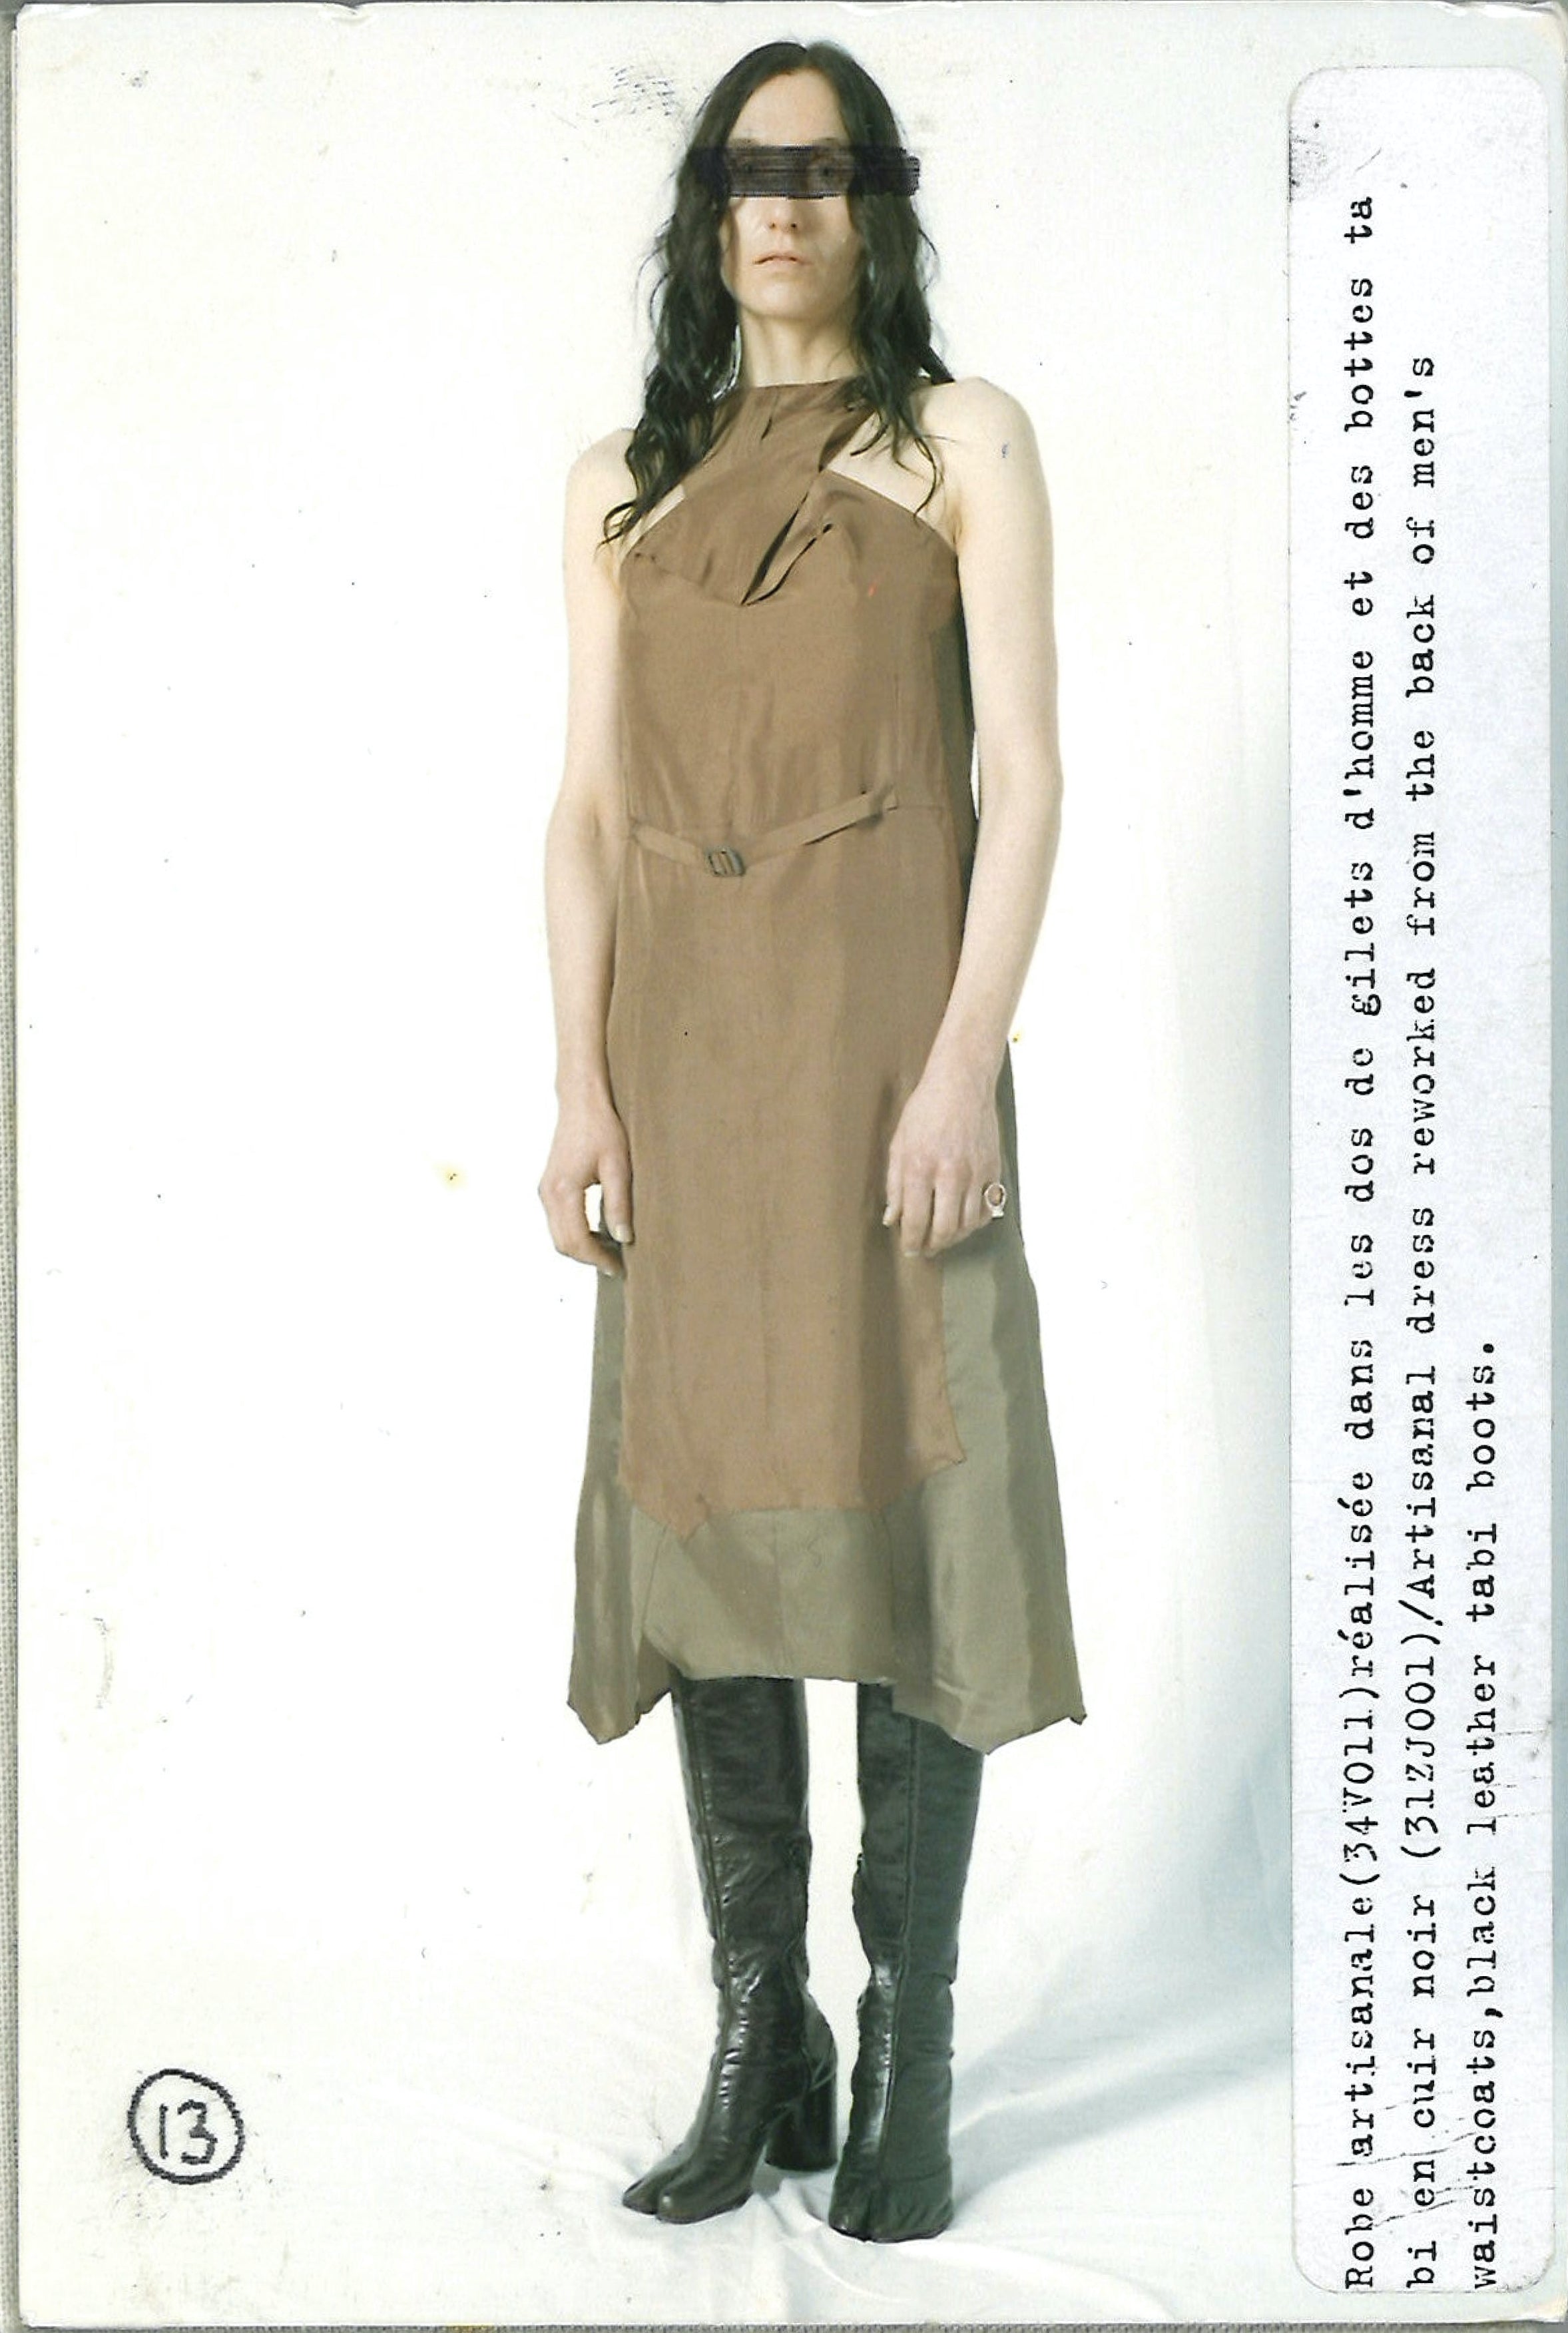 Maison Martin Margiela Lookbook
Womenswear Collection Autumn/Winter 2004-05